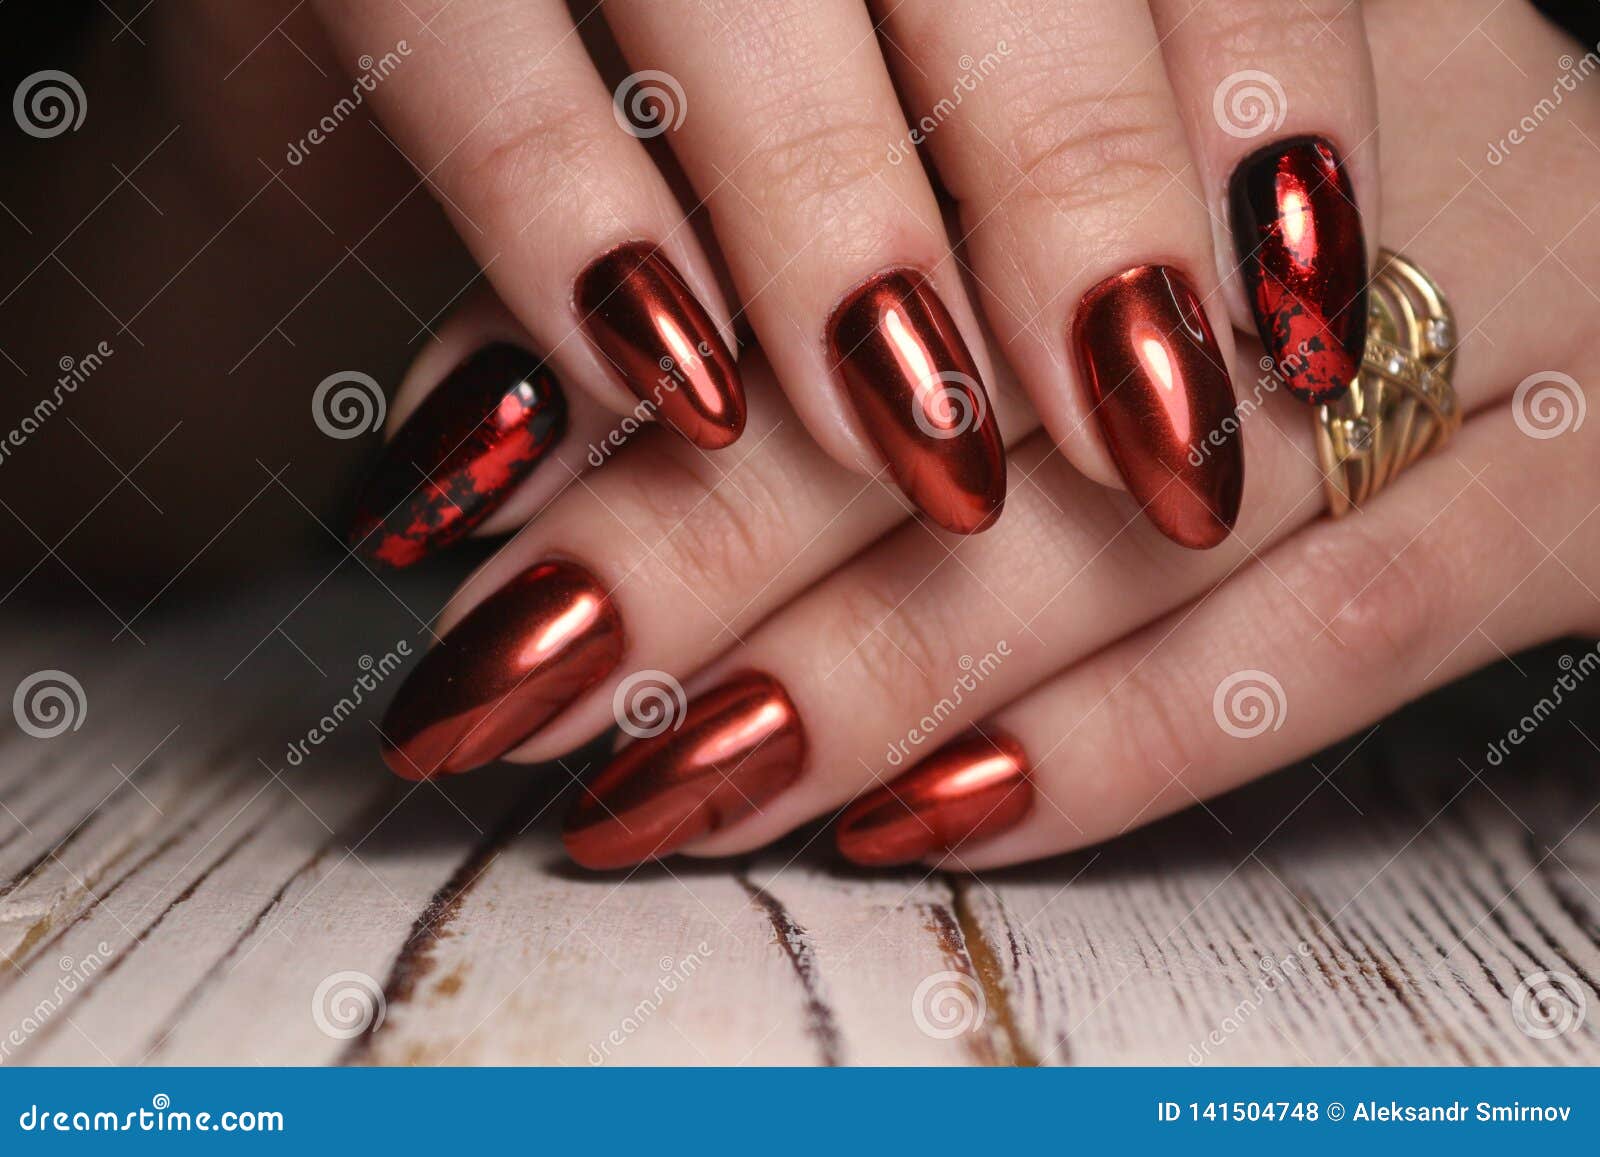 trendy top beautiful #natural nail polish nail art ||nail colour decoration  - YouTube